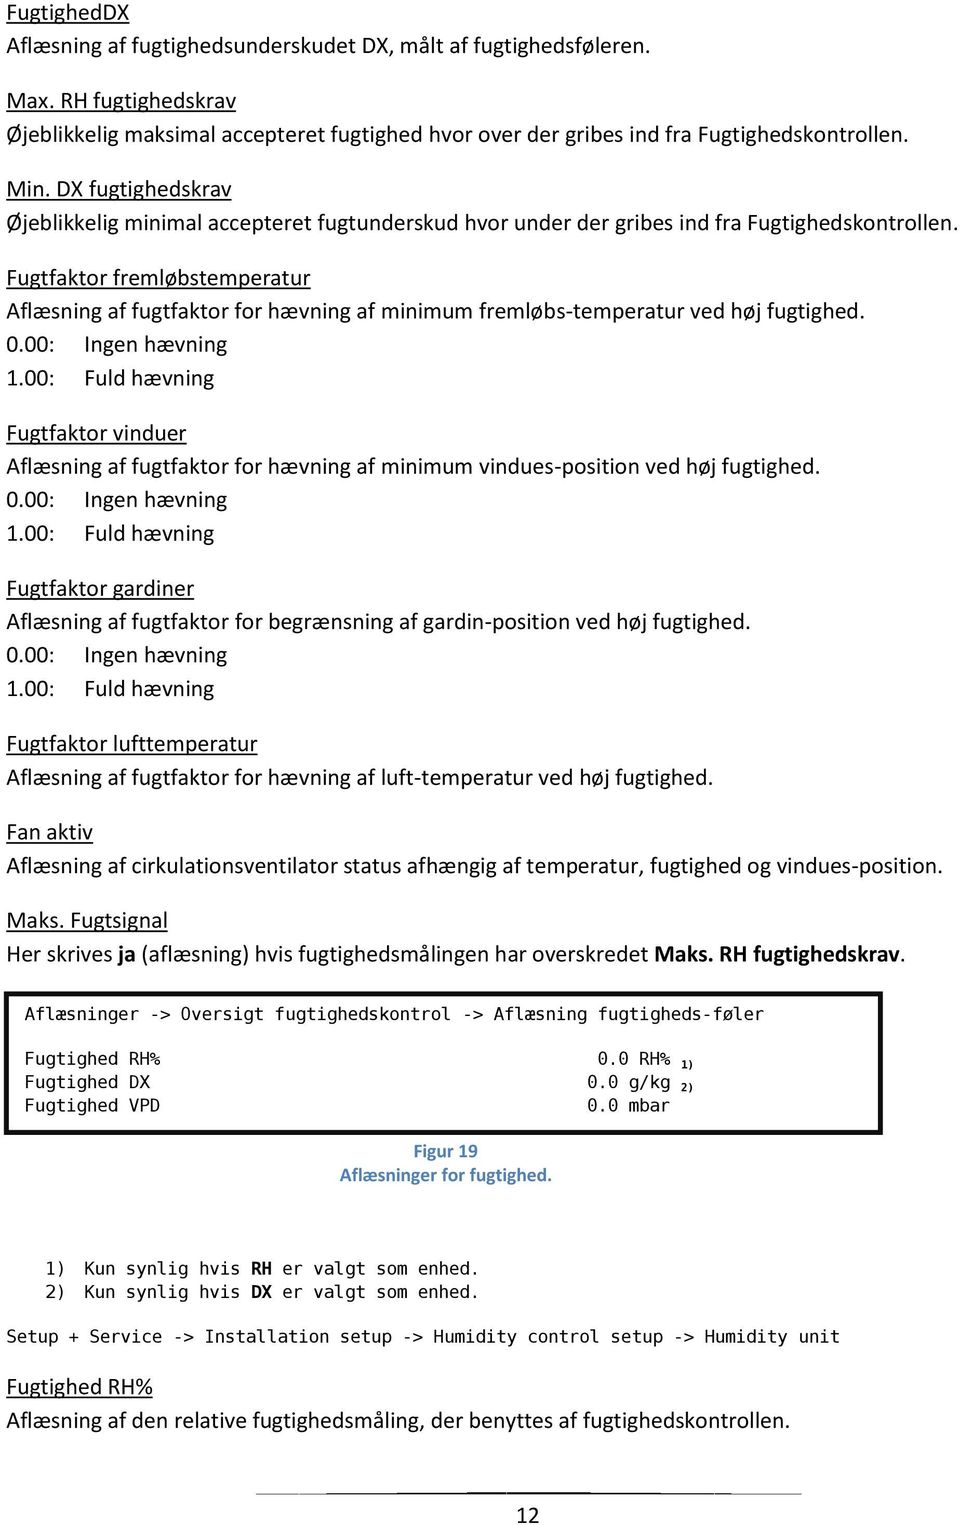 Fugtfaktor fremløbstemperatur Aflæsning af fugtfaktor for hævning af minimum fremløbs-temperatur ved høj fugtighed. 0.00: Ingen hævning 1.